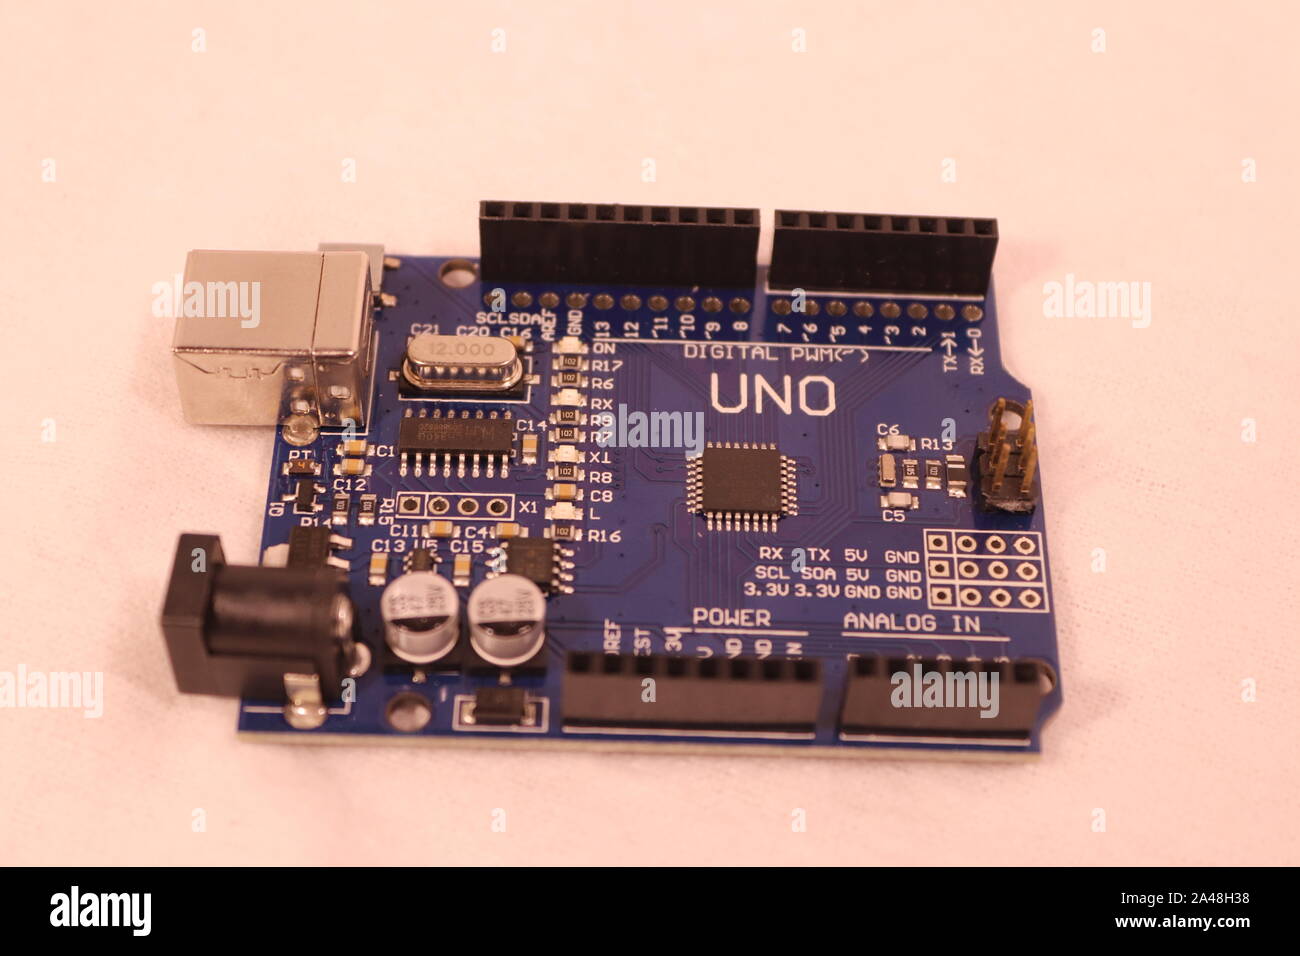 A knock-off Arduino Uno board. Stock Photo